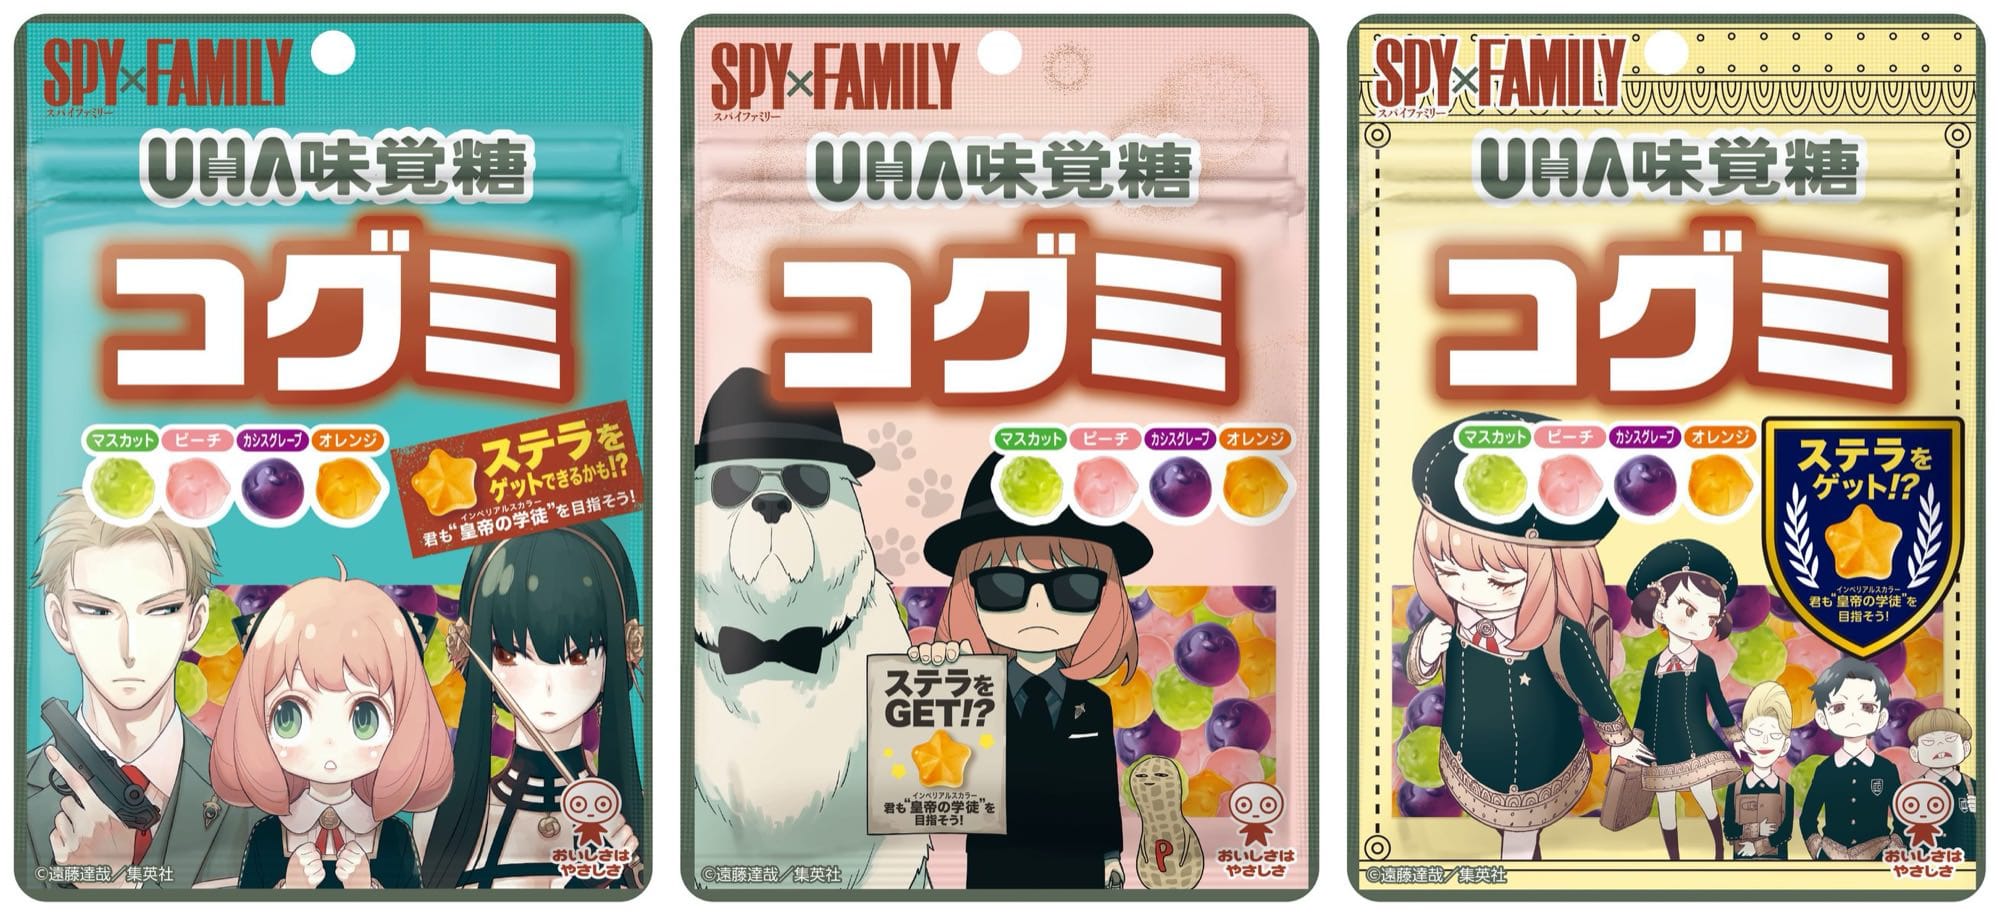 スパイファミリー × UHA味覚糖 4.19よりコグミ SPY×FAMILY 発売!